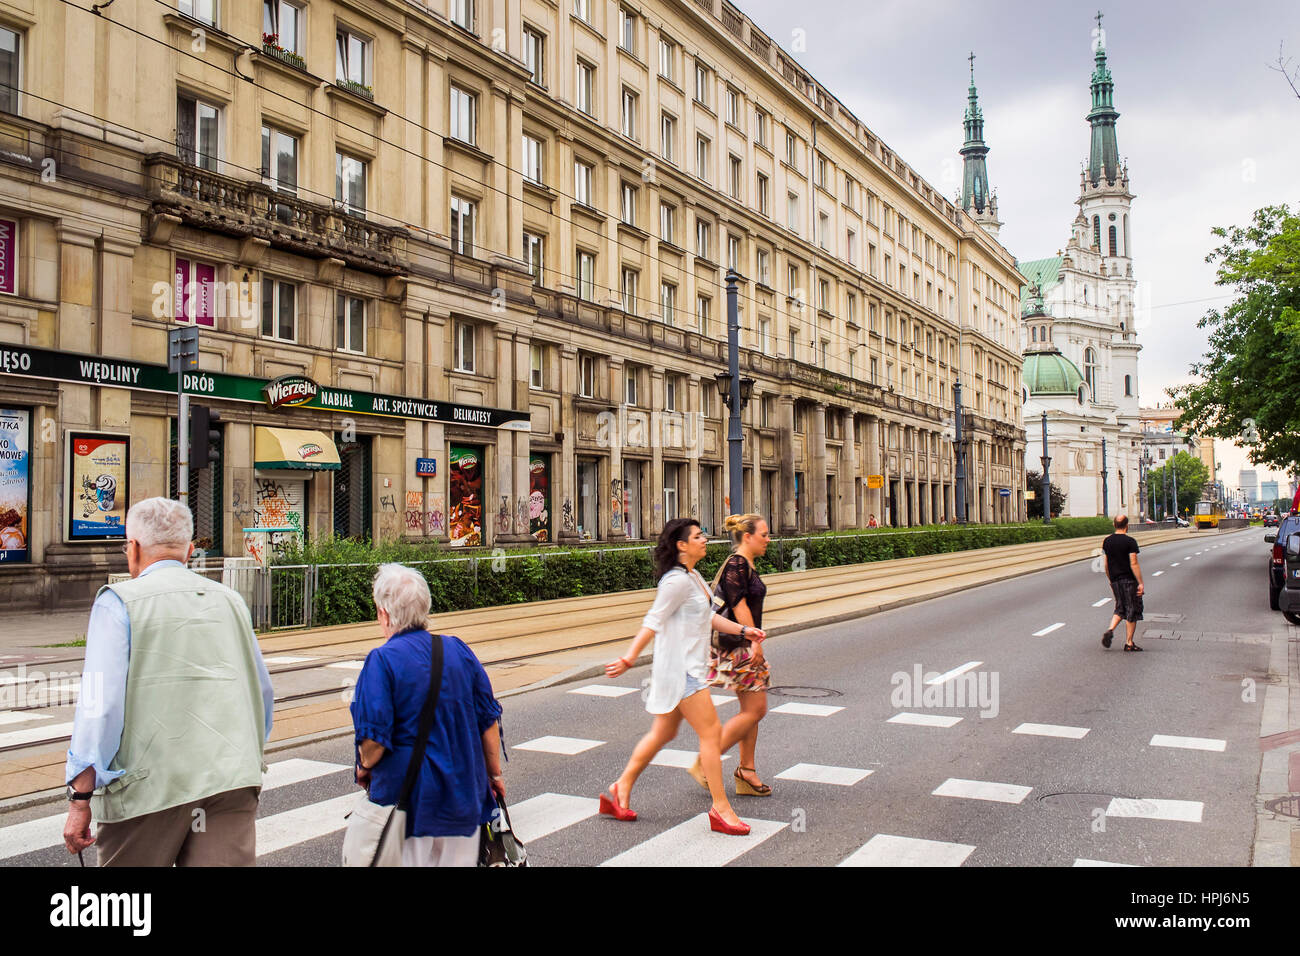 Ul.Marszalkowska Straße, kommunistische Architektur und Städtebau, Warschau, Polen Stockfoto